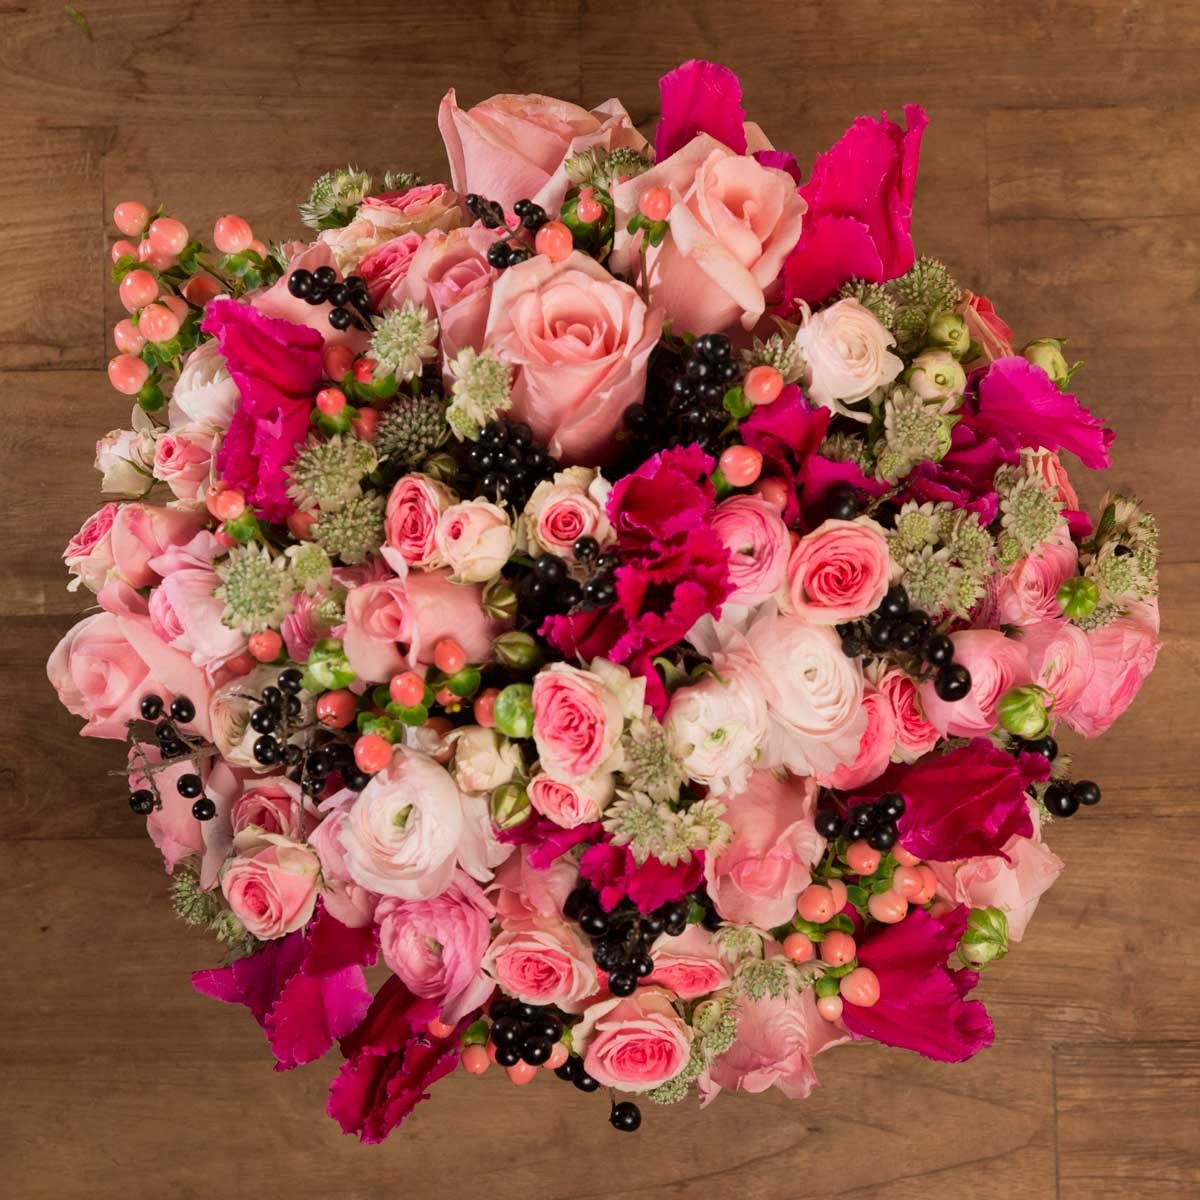 Livraison de fleurs paris - Le bouquet de fleurs Hores